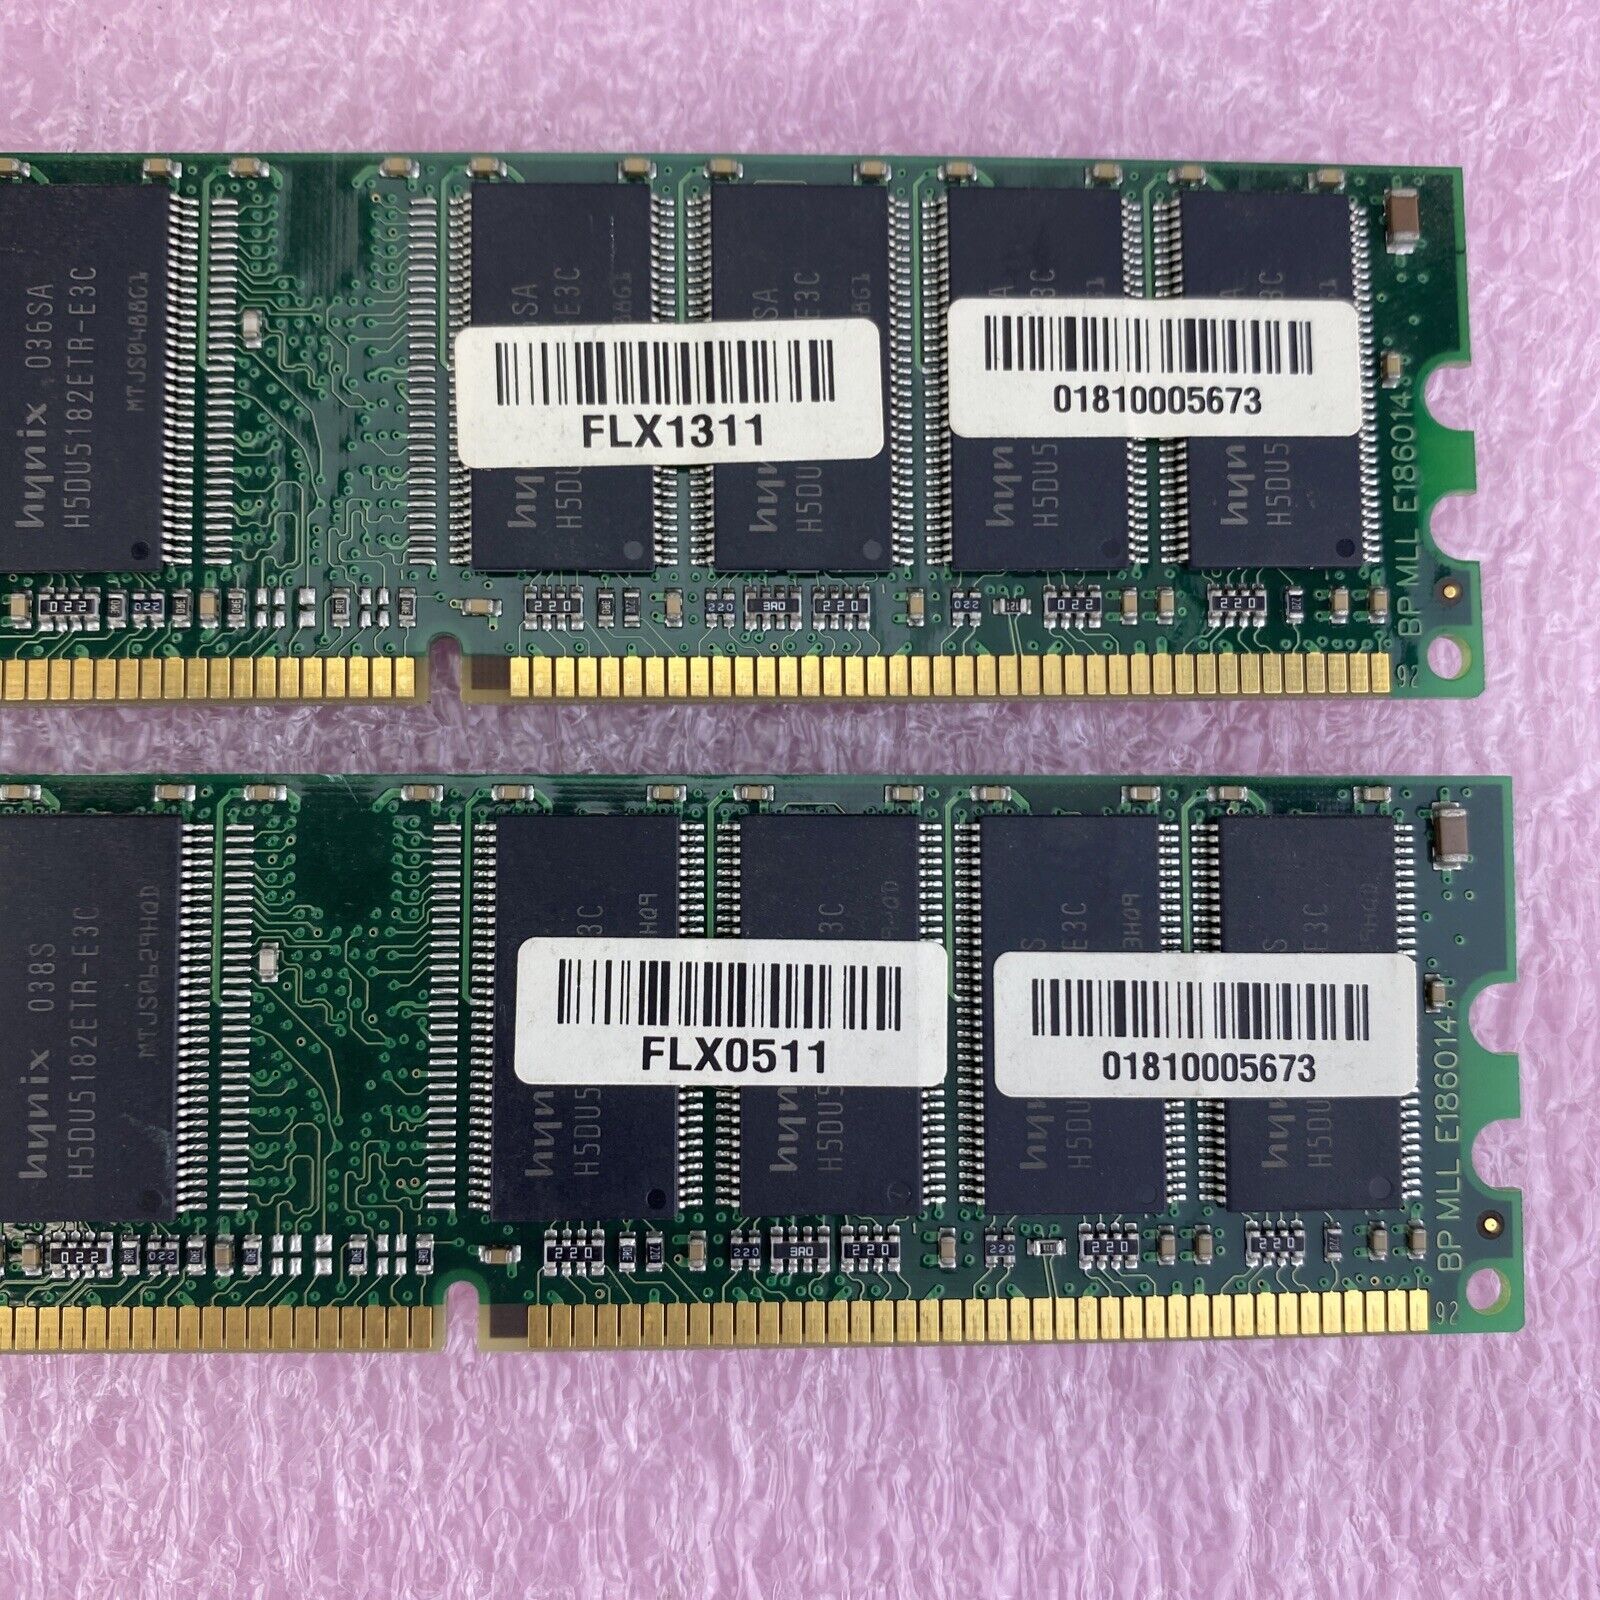 2x 1GB Swissbit MDU01G64H3BE2HY-50R PC3200 CL3 DDR